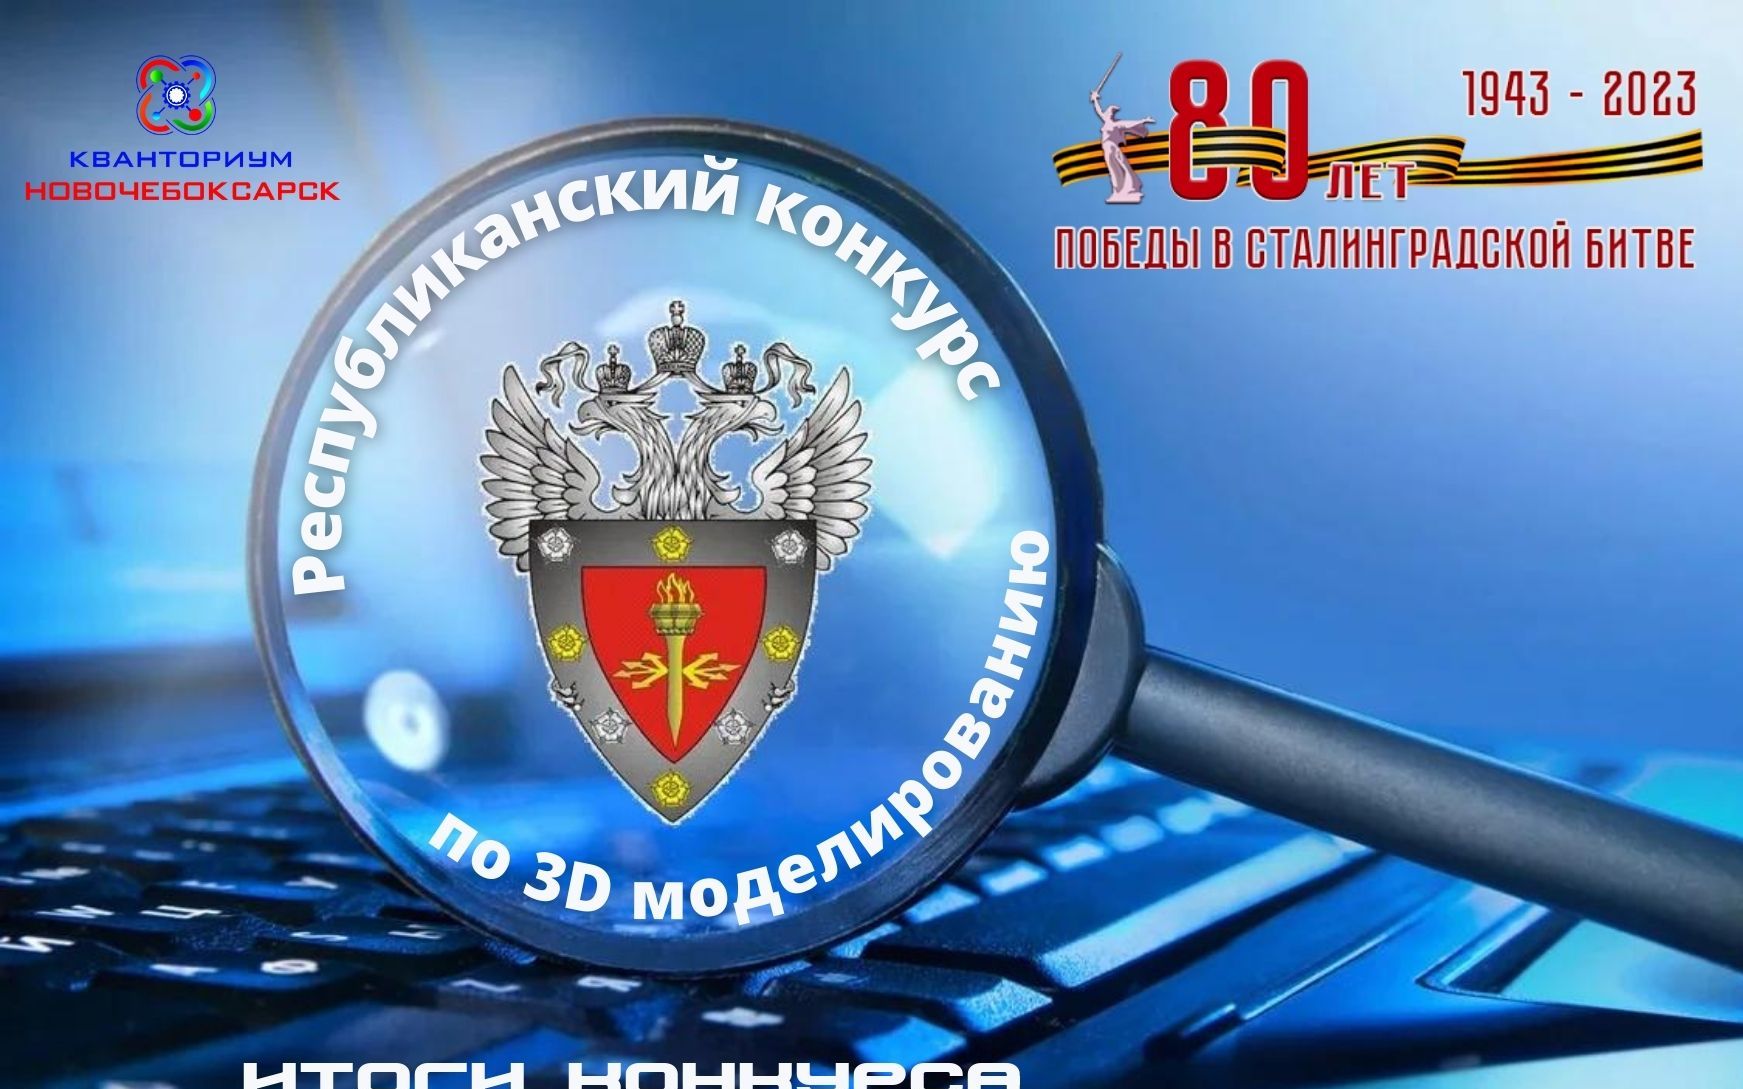  Итоги республиканского конкурса по 3D моделированию «Щит России».